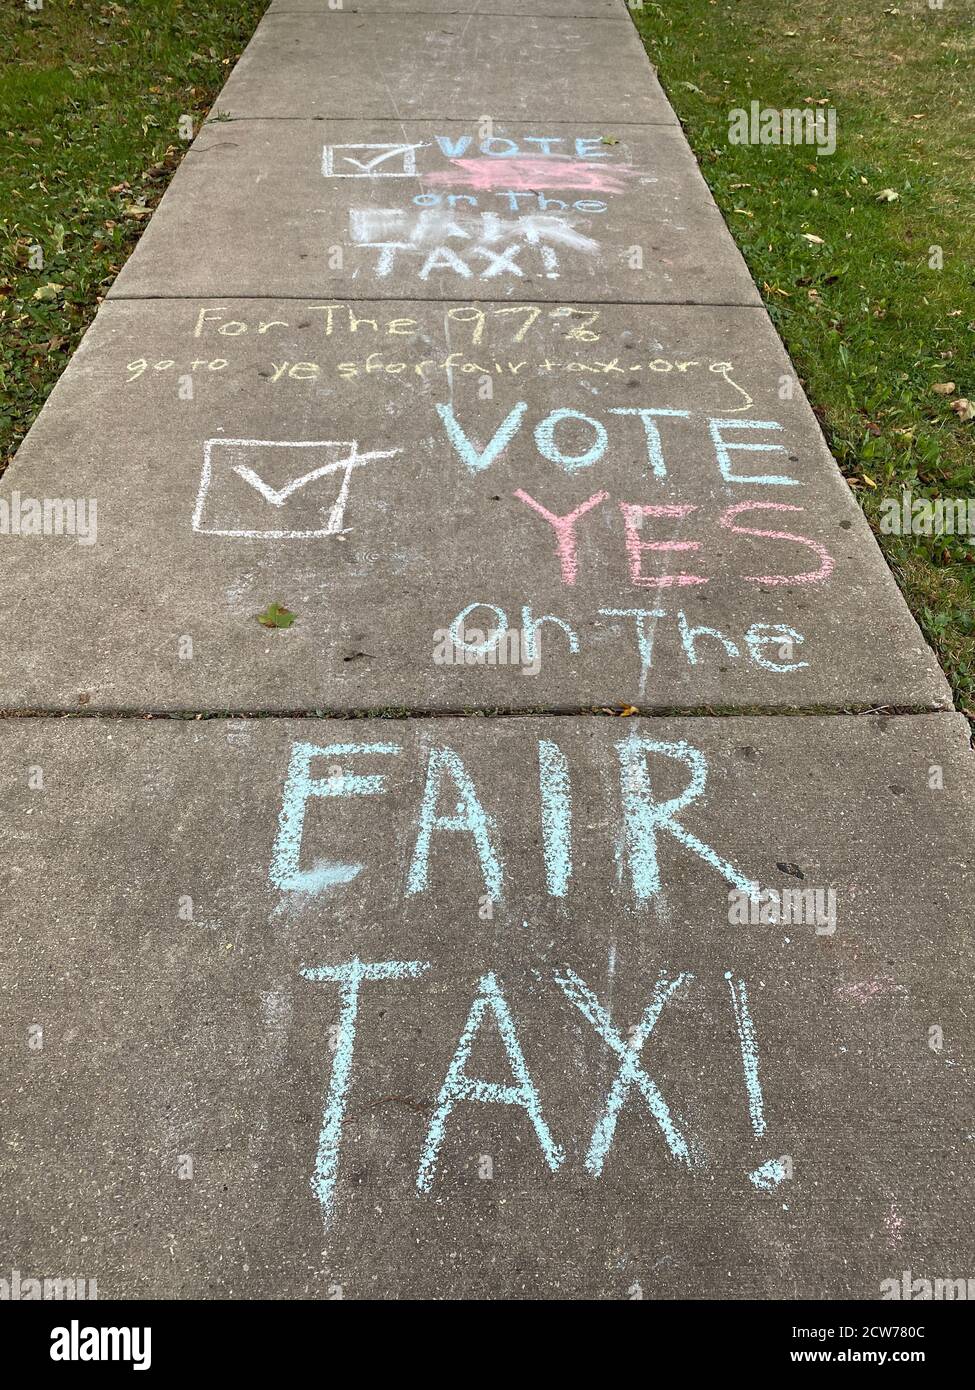 Il messaggio del gesso del marciapiede di votare sì sull'emendamento dell'Illinois relativo alla Fair Tax sullo scrutinio delle elezioni del 2020. Foto Stock